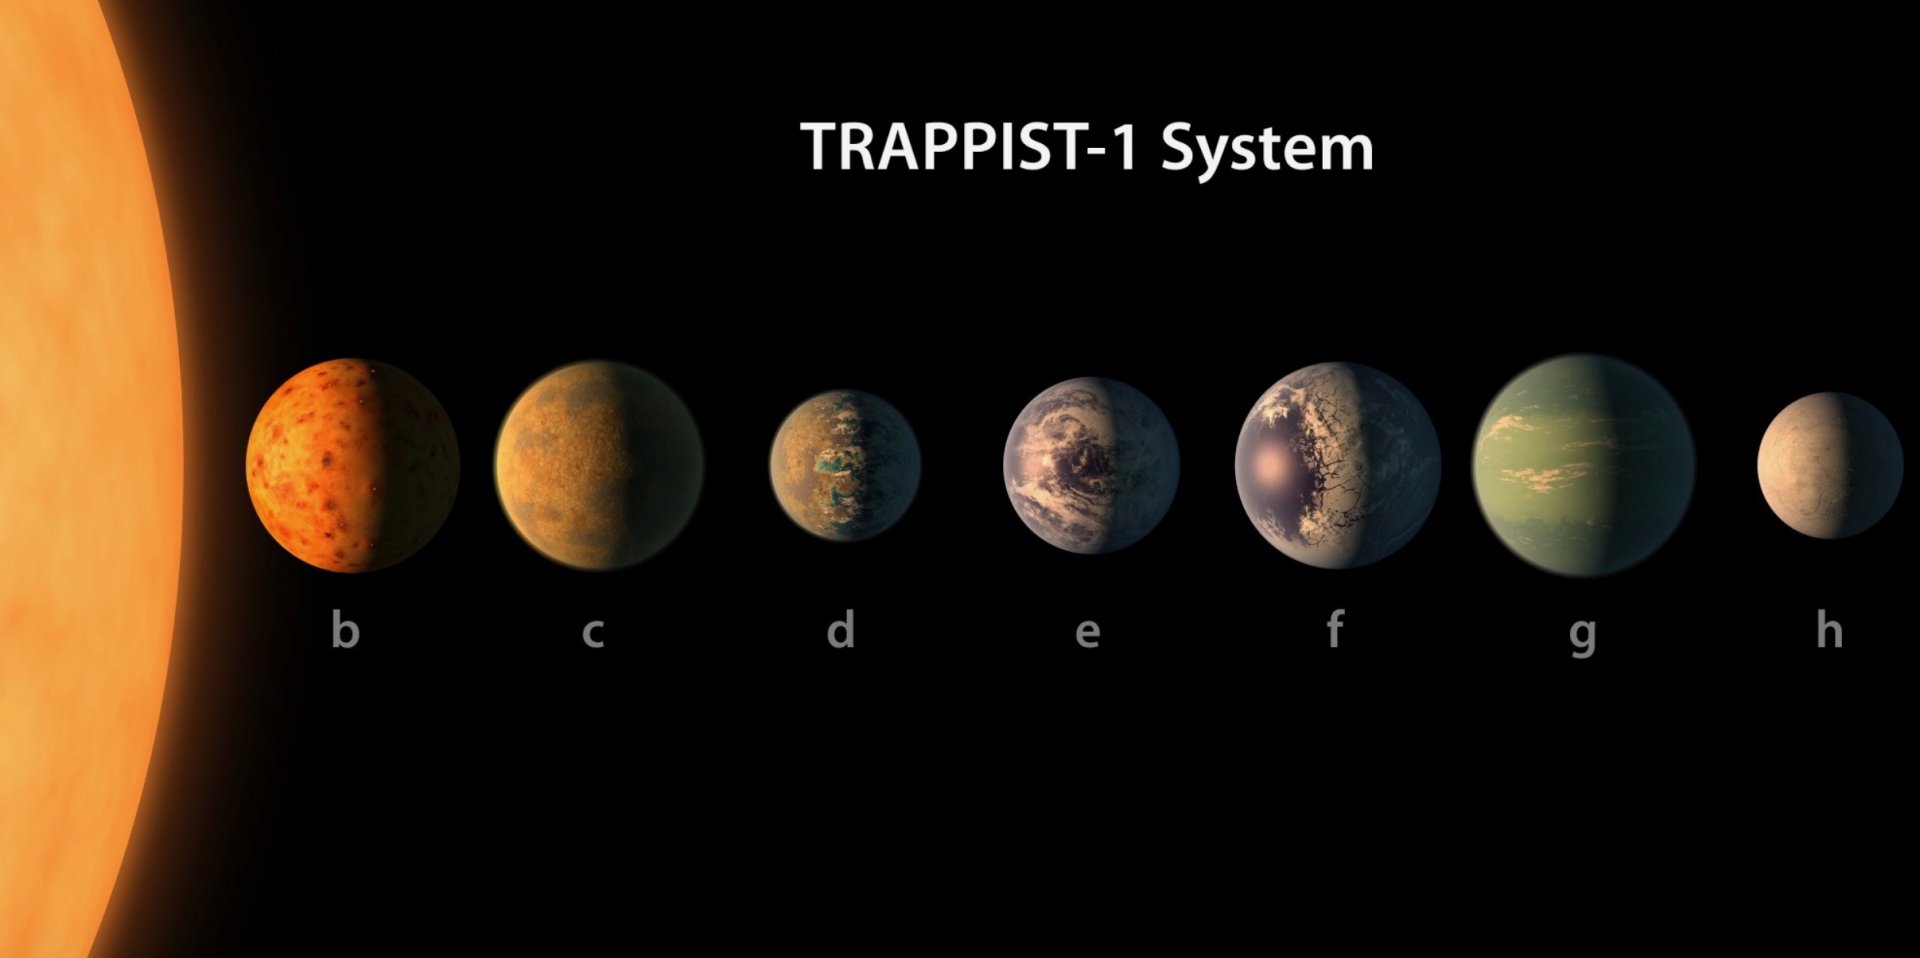 천문학자:두 행성 시스템에 관심을 가져-1 거주